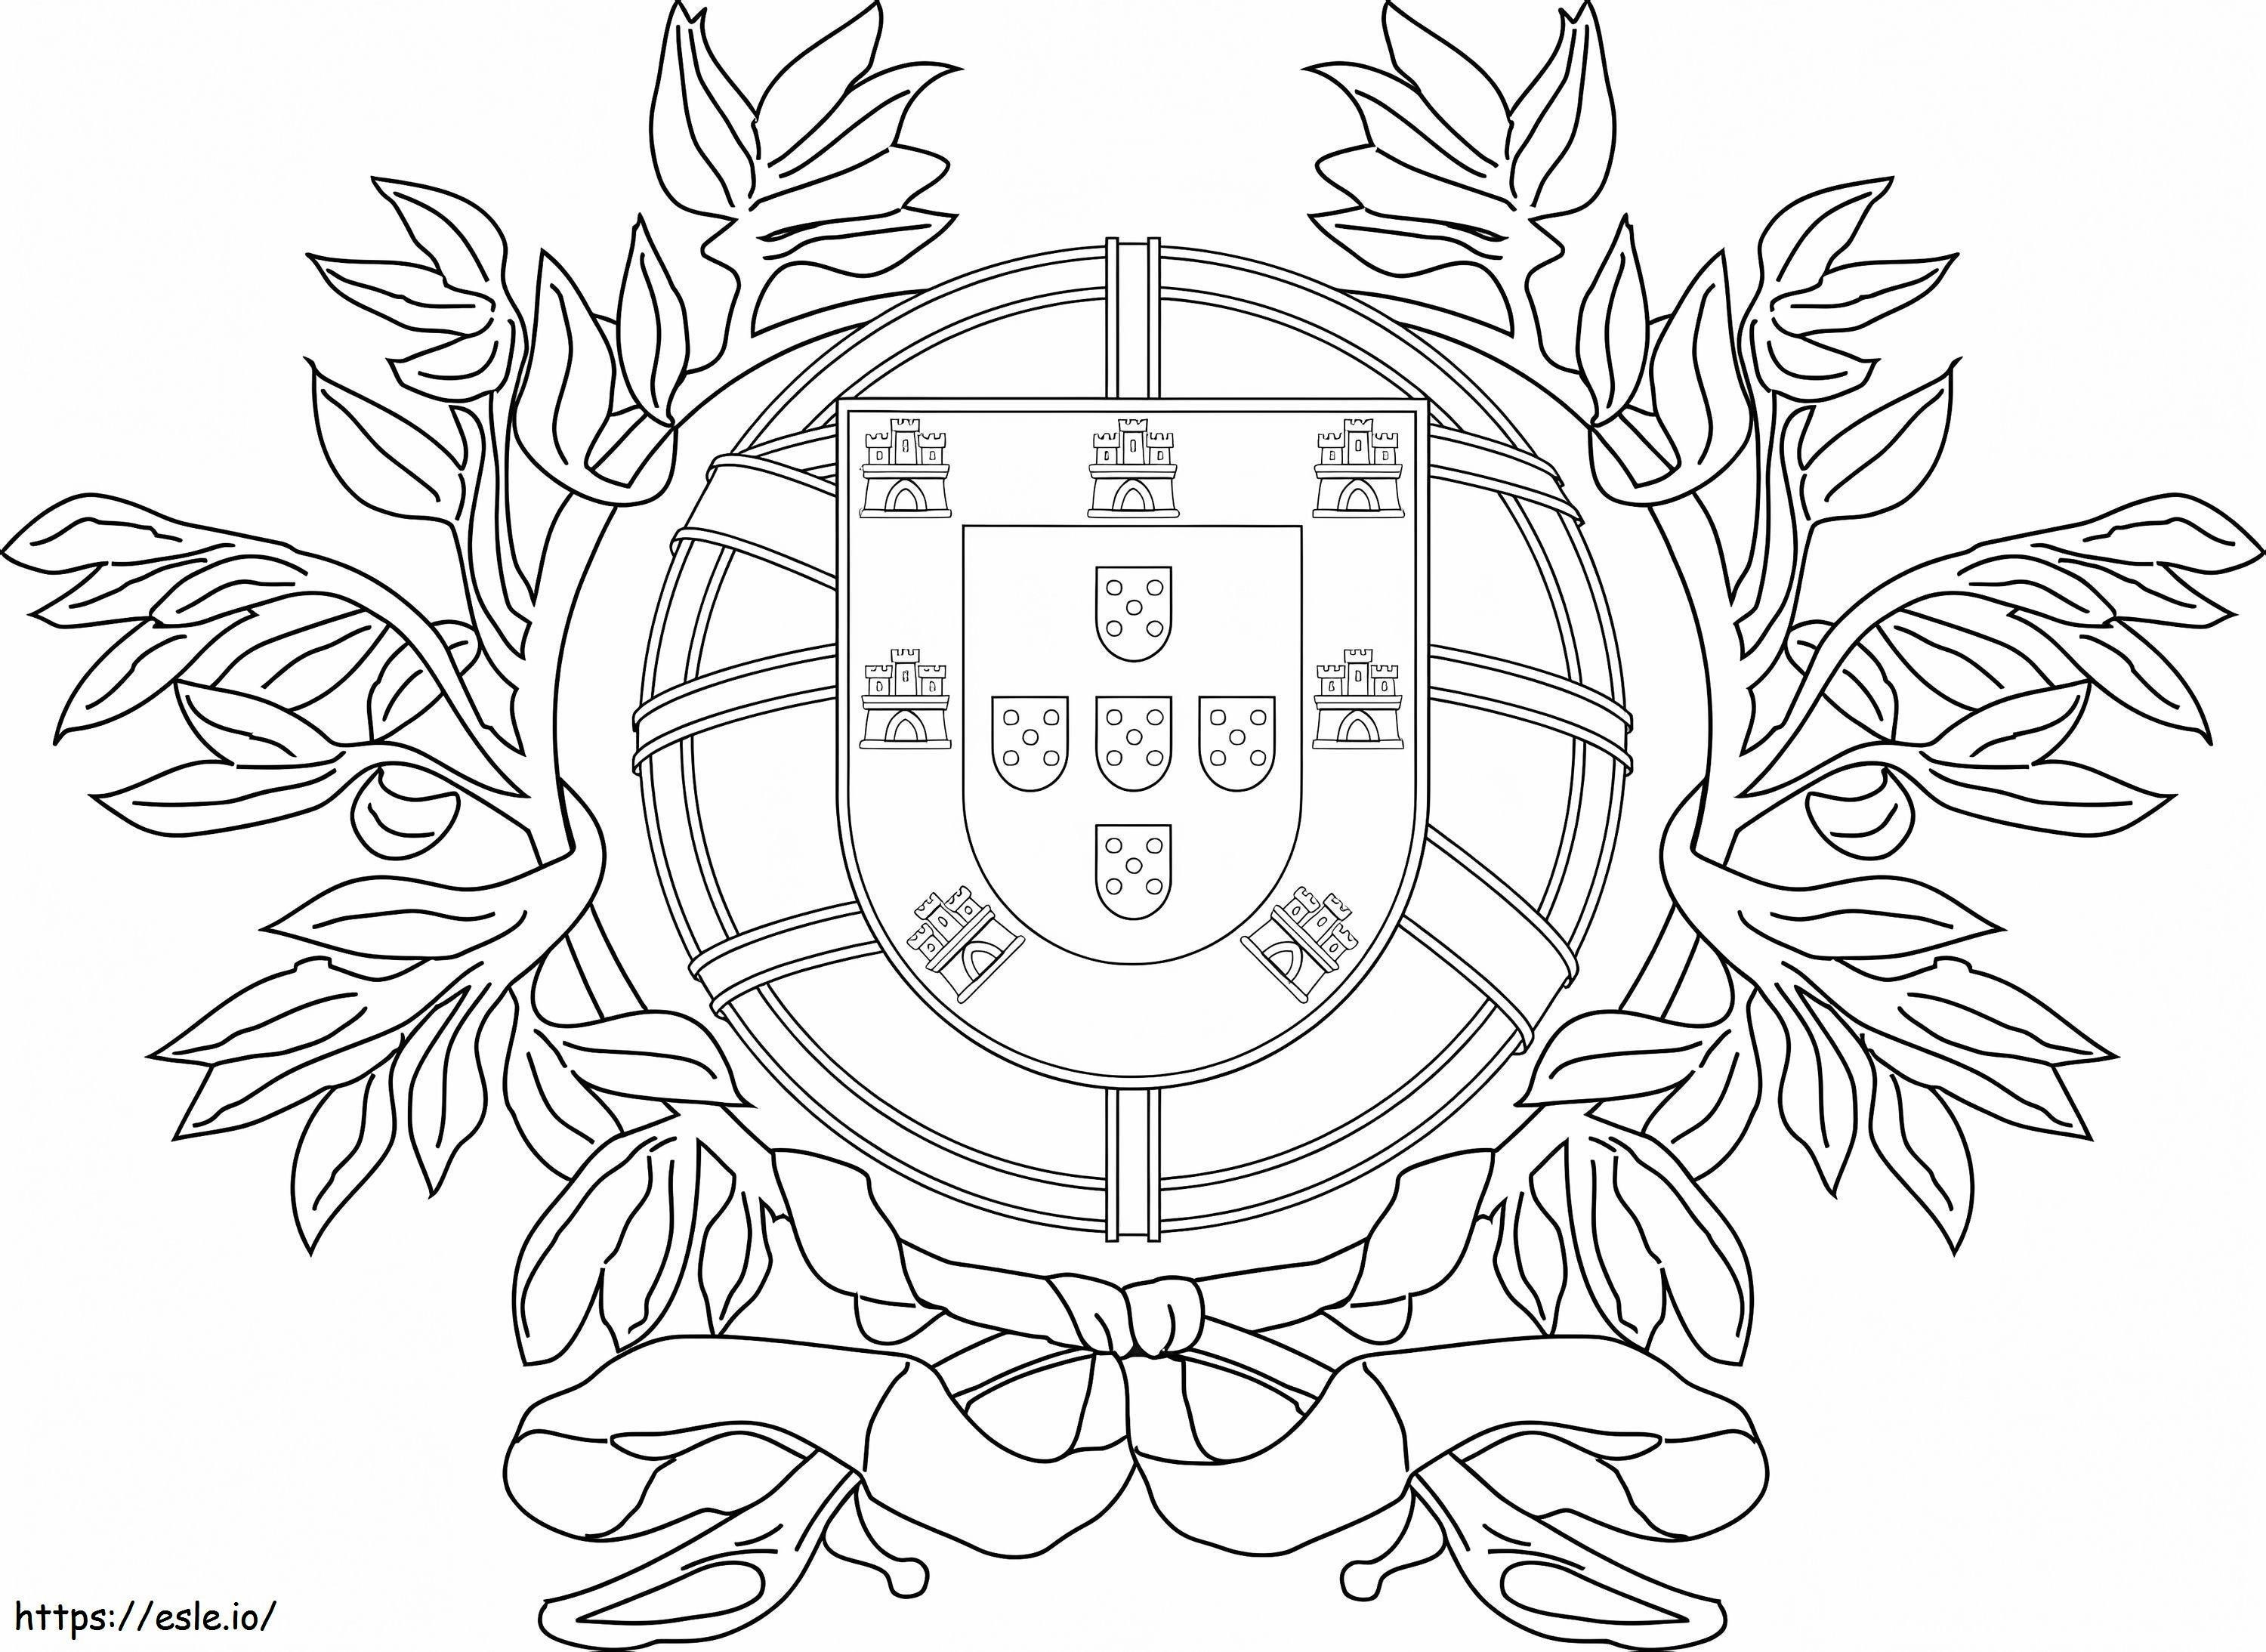 Wappen von Portugal ausmalbilder